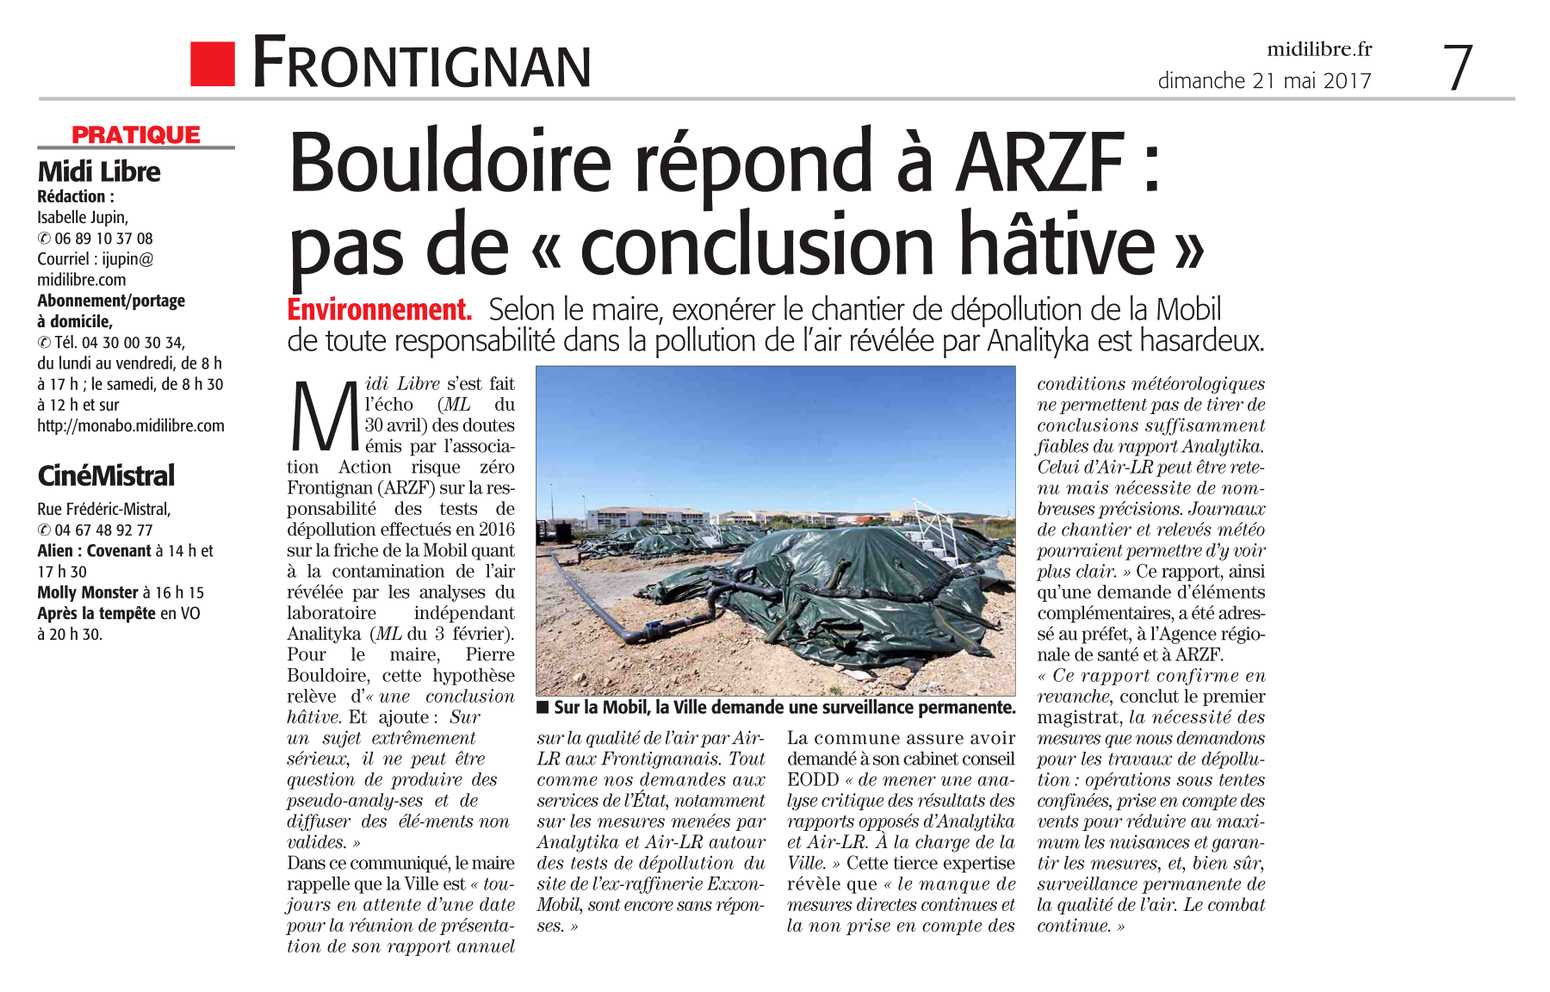 21.05.2017 > MIDI-LIBRE : "Frontignan : Pollution de l'air : Bouldoire répond à ARZF : « Pas de conclusion hâtive »"